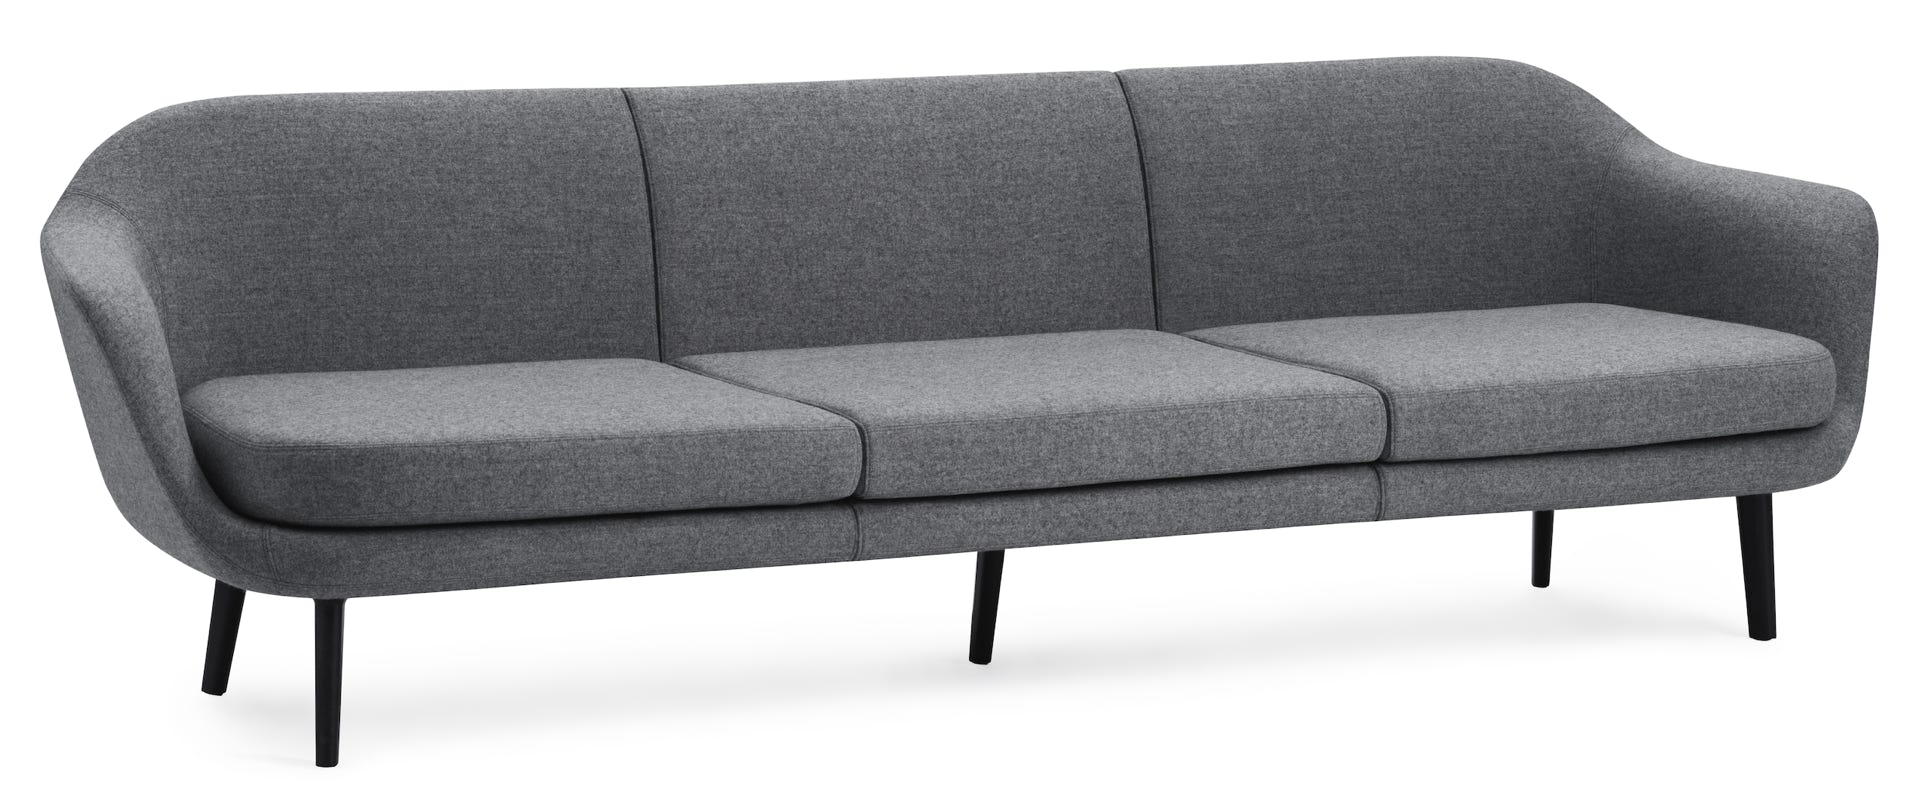 Sum modular sofa Simon Legald, 2018